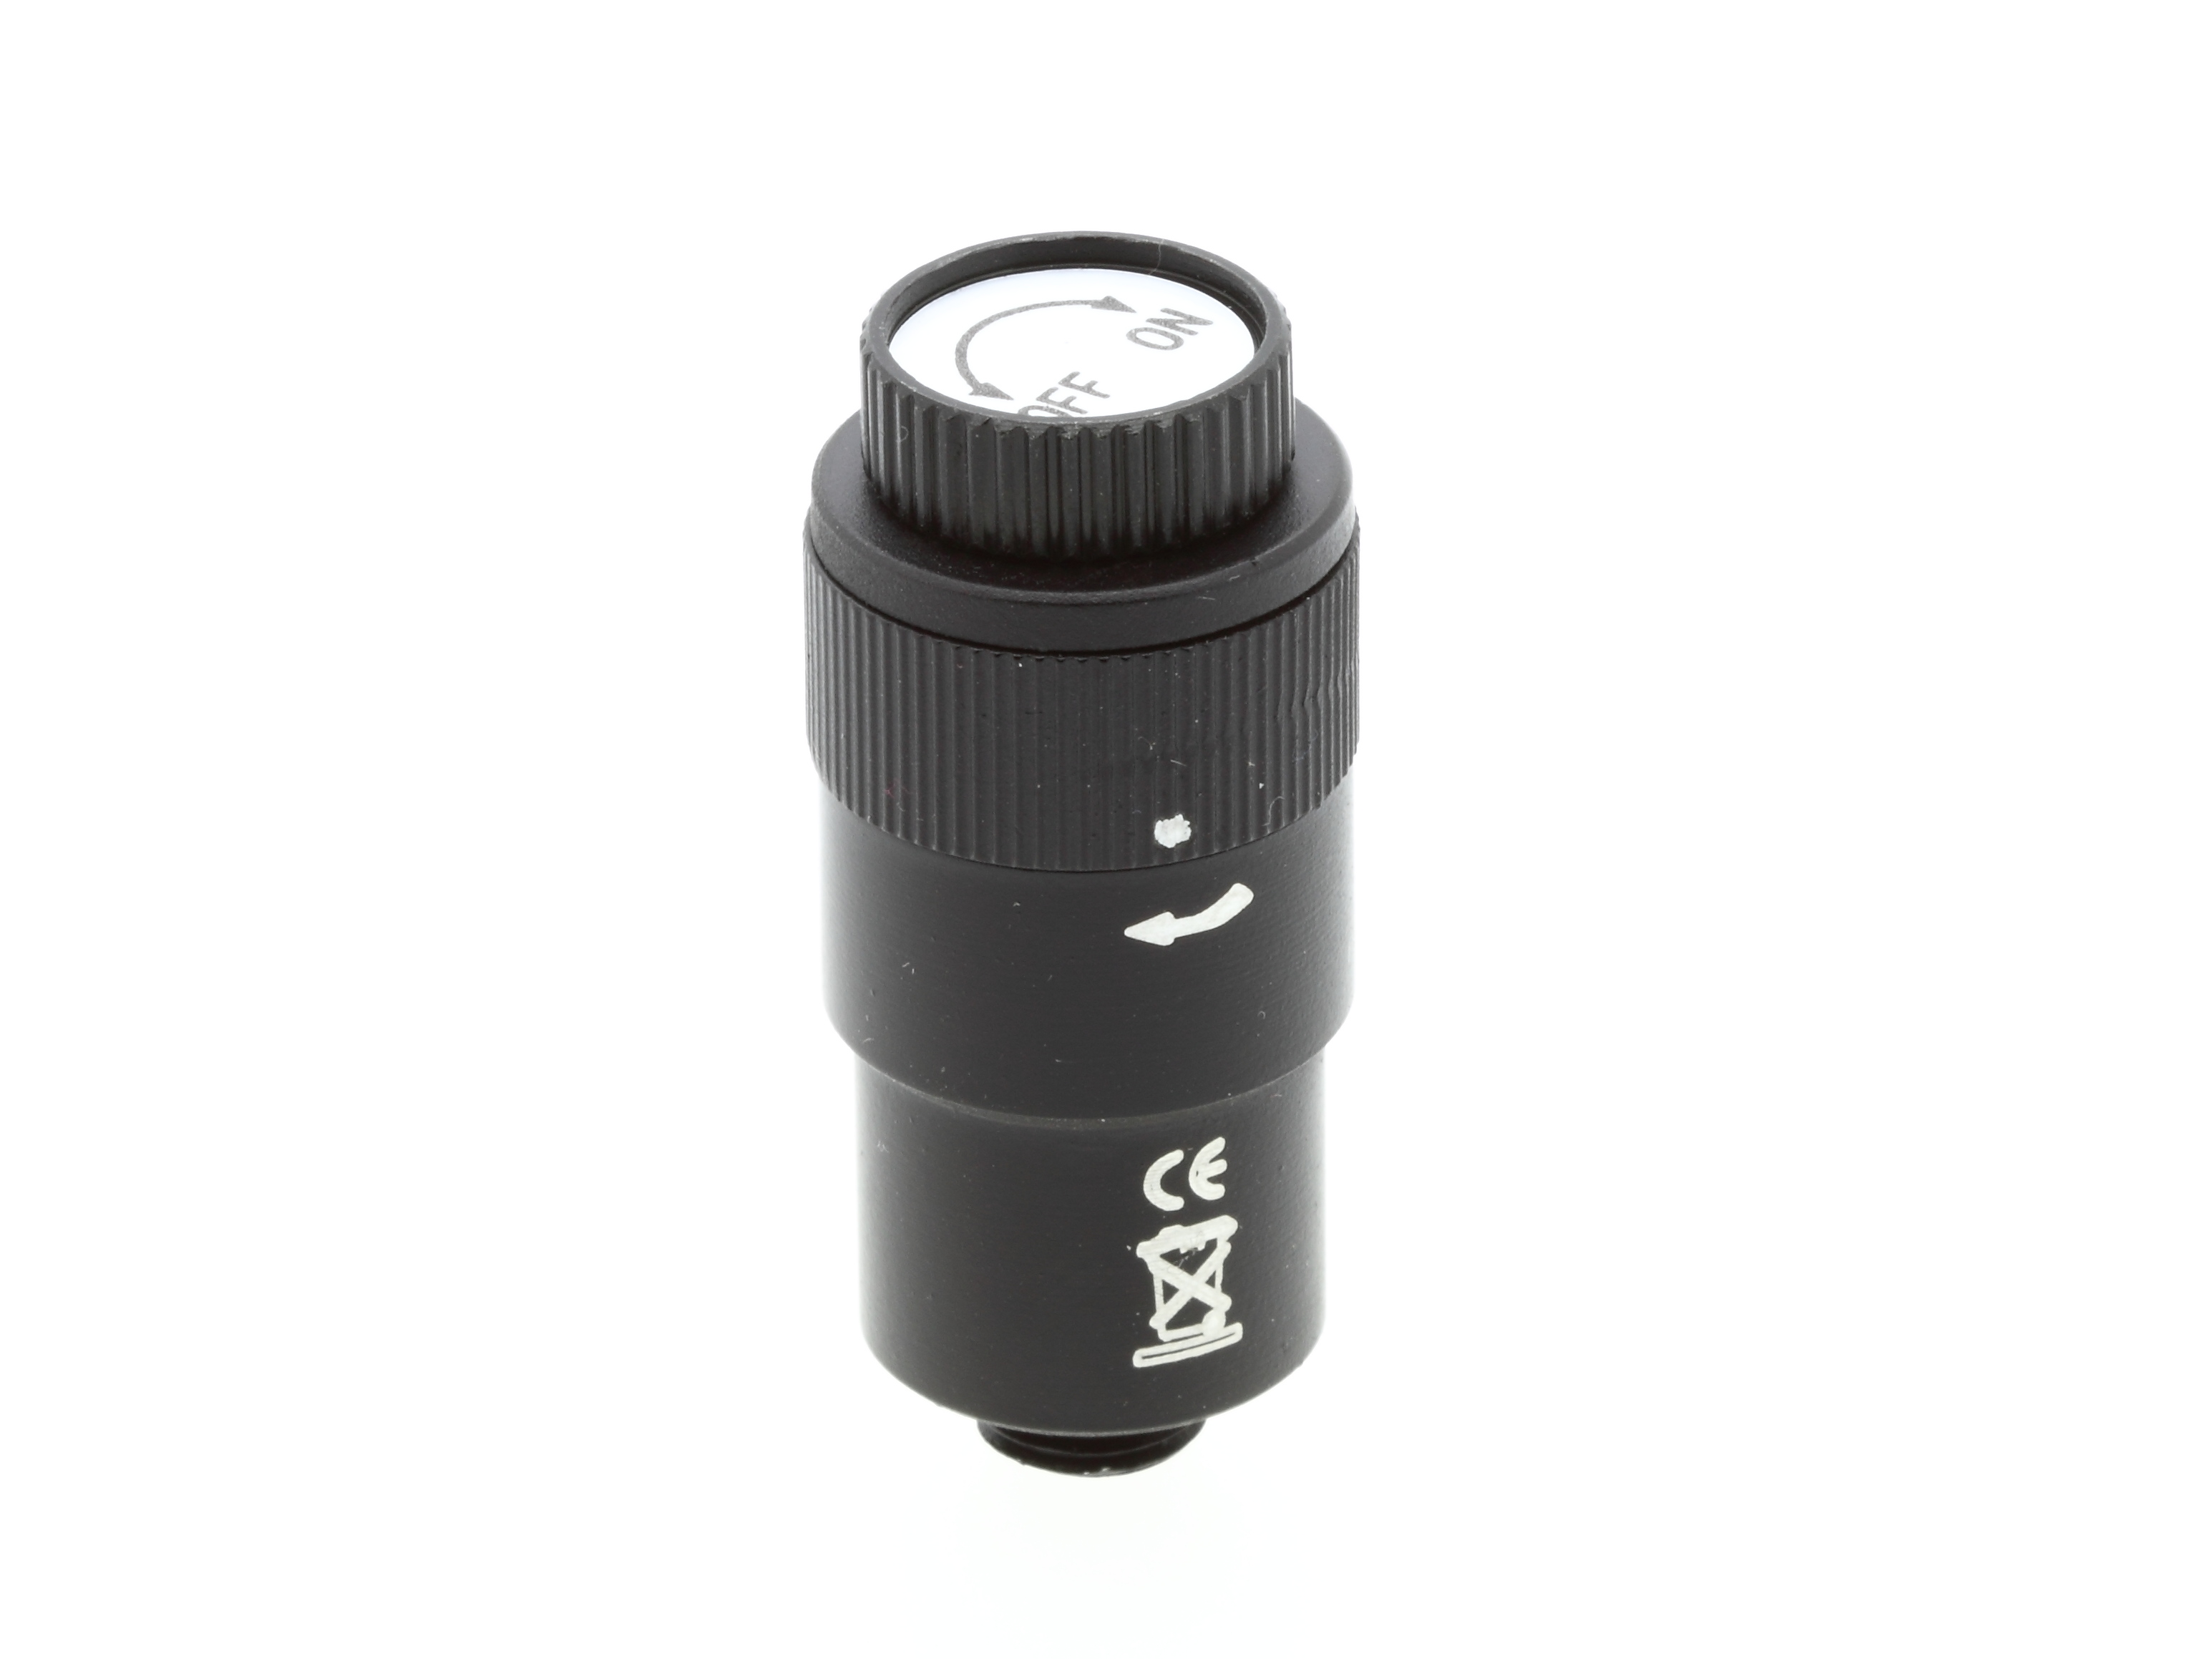 BRESSER Illuminatore per cercatori per EXOS-2 M8x0.75mm